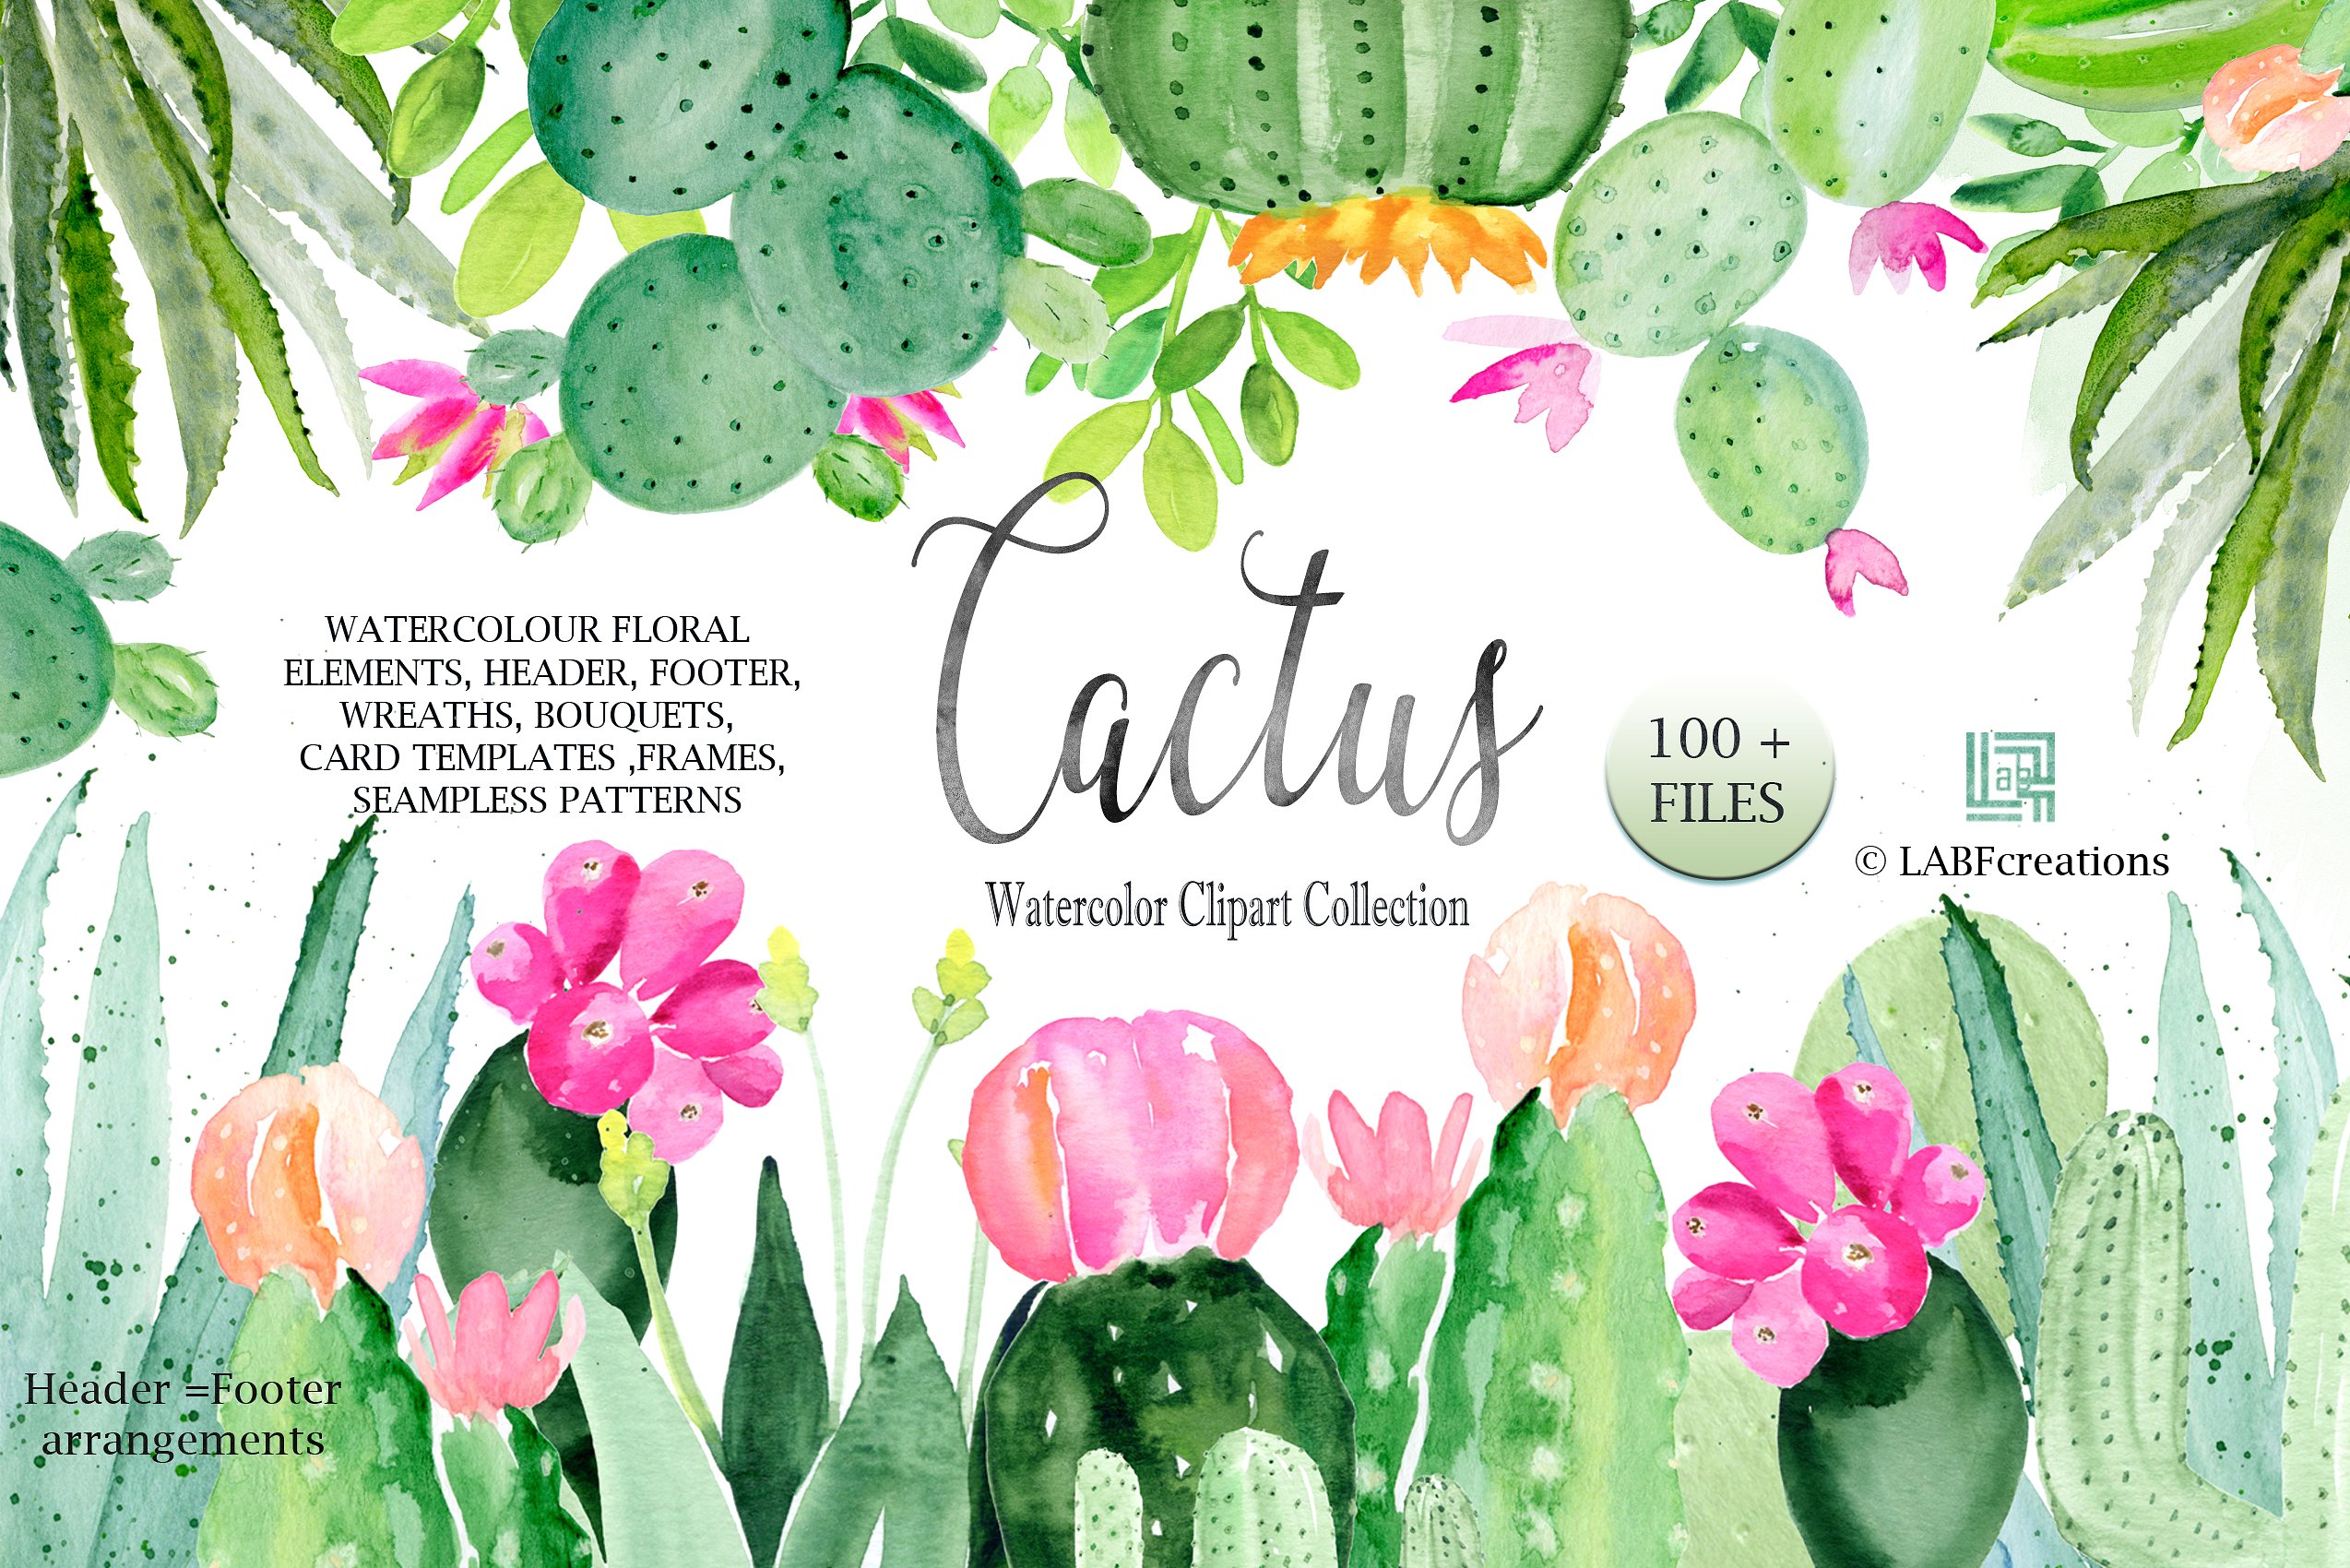 手绘水彩植物仙人掌芦荟插图素材 Cactus-waterco